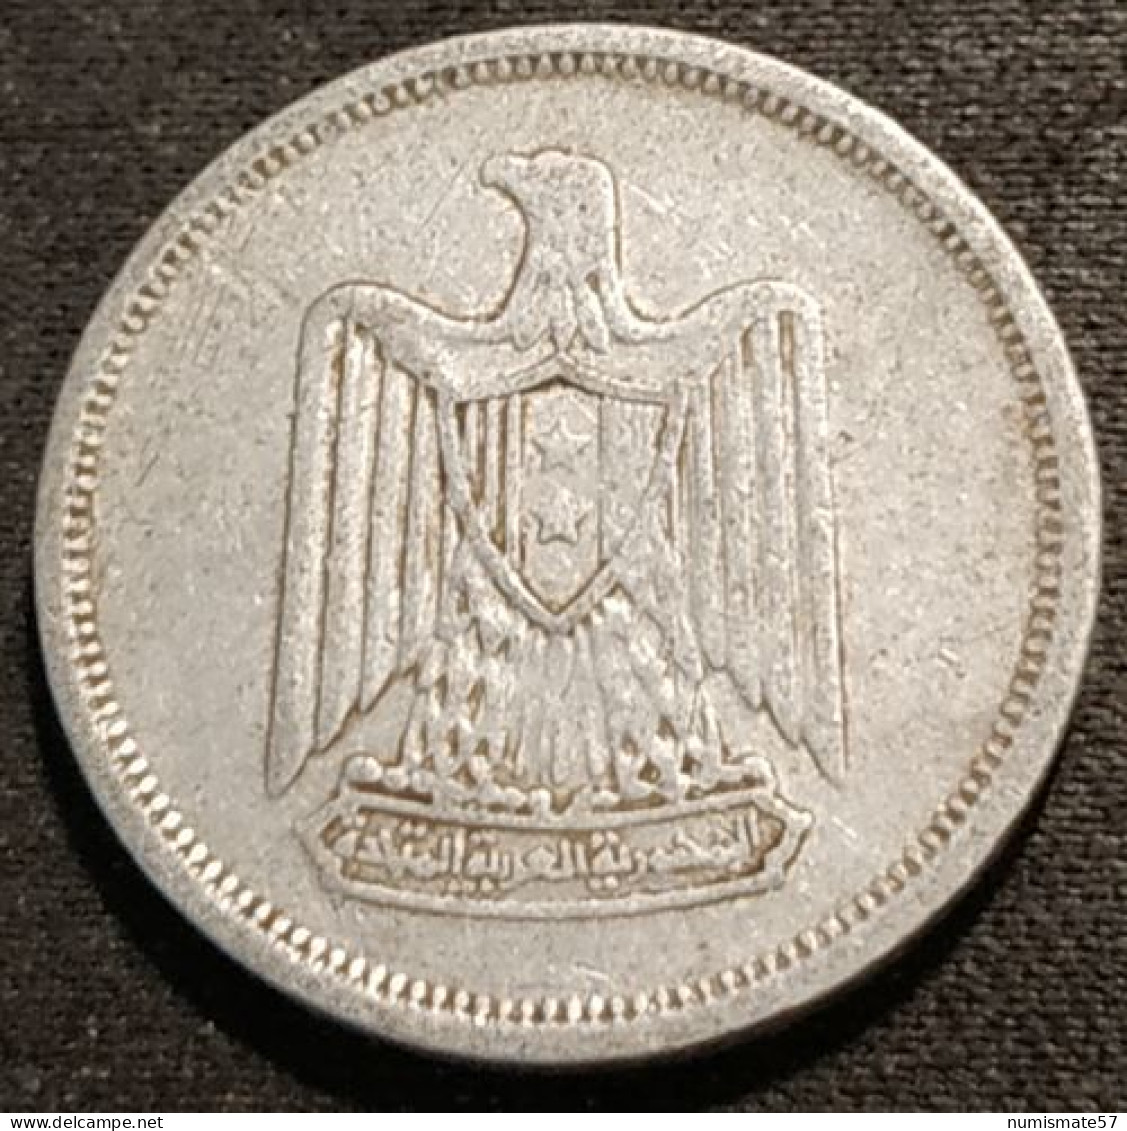 EGYPTE - EGYPT - 5 MILLIEMES 1967 ( 1386 ) - KM 410 - Aegypten